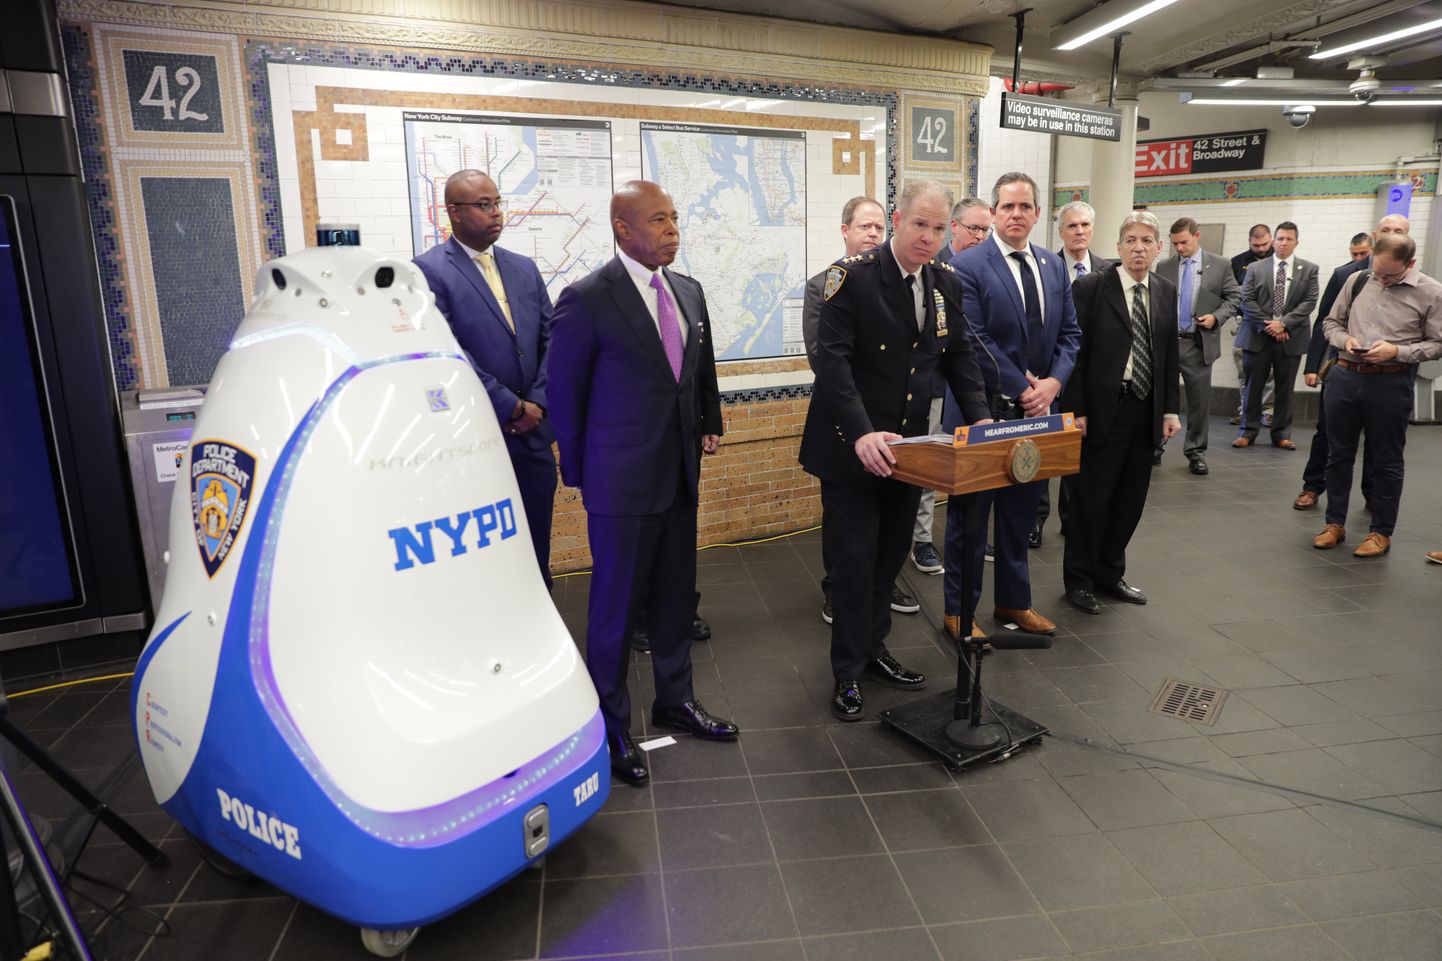 Selline näeb välja robotpolitseinik, mis alustas patrullimist New Yorgis Times Square´i metroojaamas. Masinat tutvcustas linnapea Eric Adams.